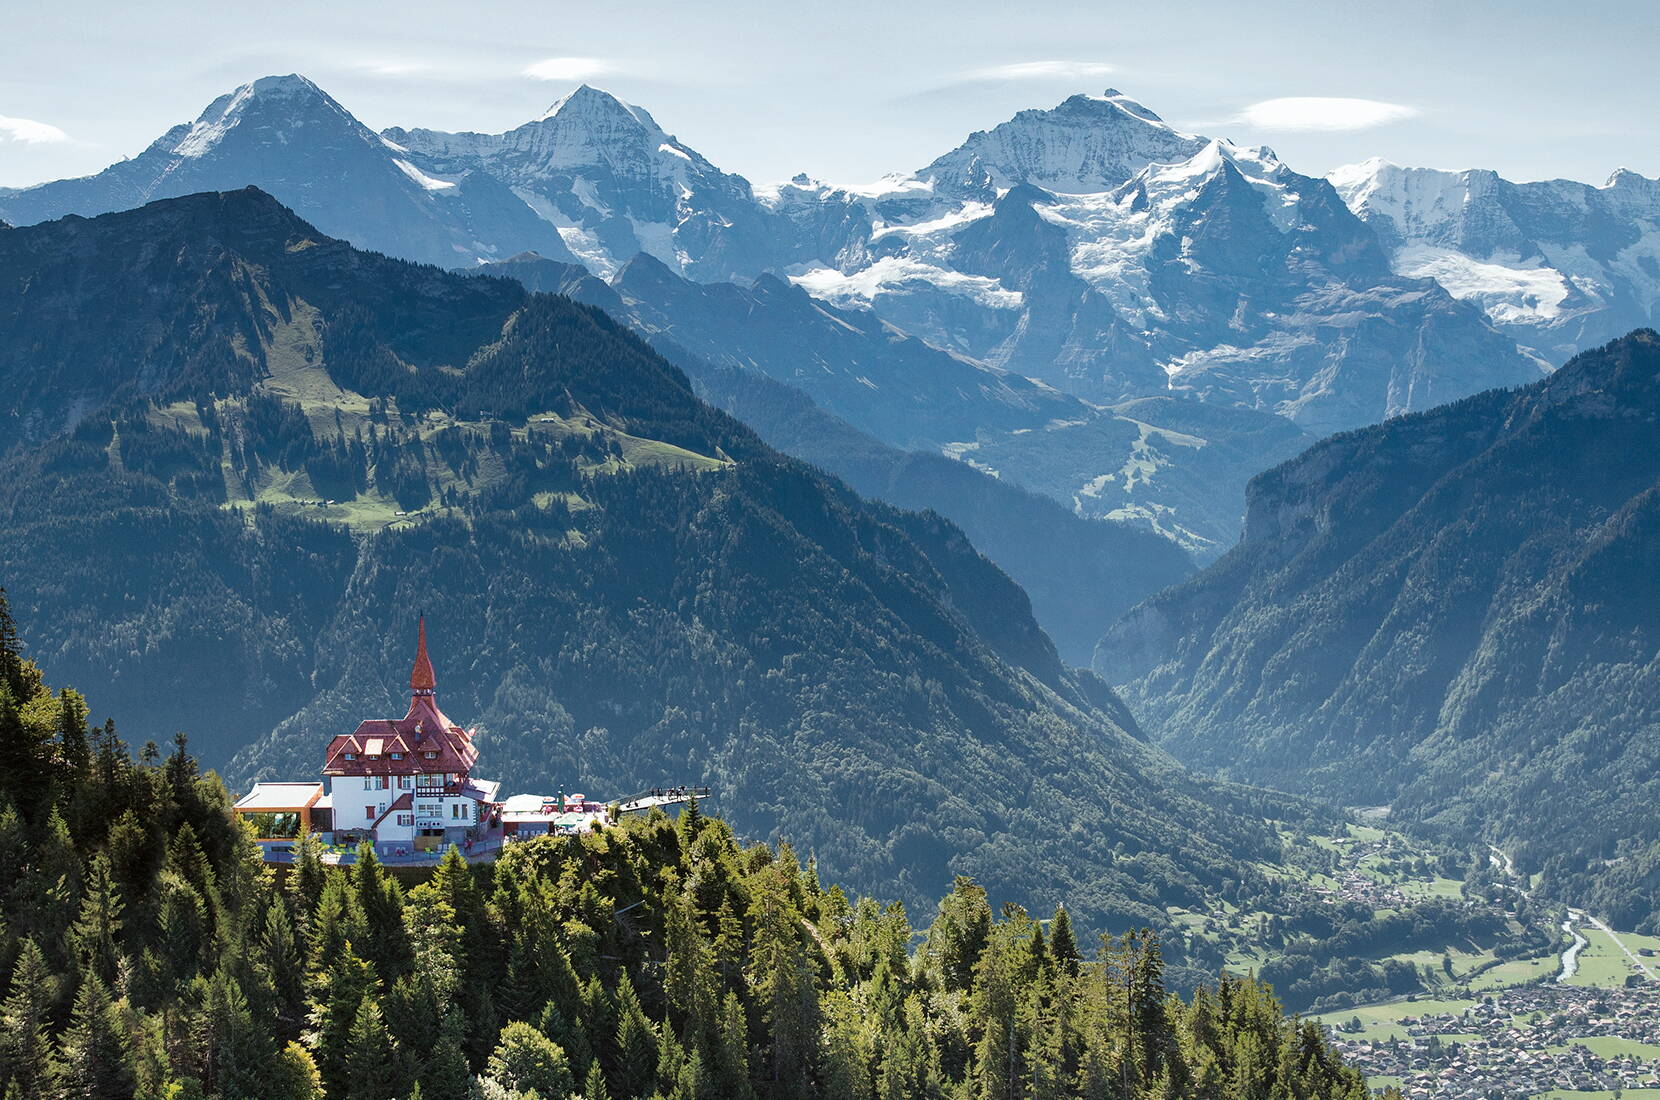 Il ristorante panoramico Harder Kulm si trova in alto sopra Interlaken, a 1.322 metri sul livello del mare. Per raggiungere l'Harder Kulm con la funicolare da Interlaken ci vogliono solo 10 minuti. La piattaforma panoramica offre una vista unica su Eiger, Mönch e Jungfrau, oltre che sui laghi di Thun e Brienz.